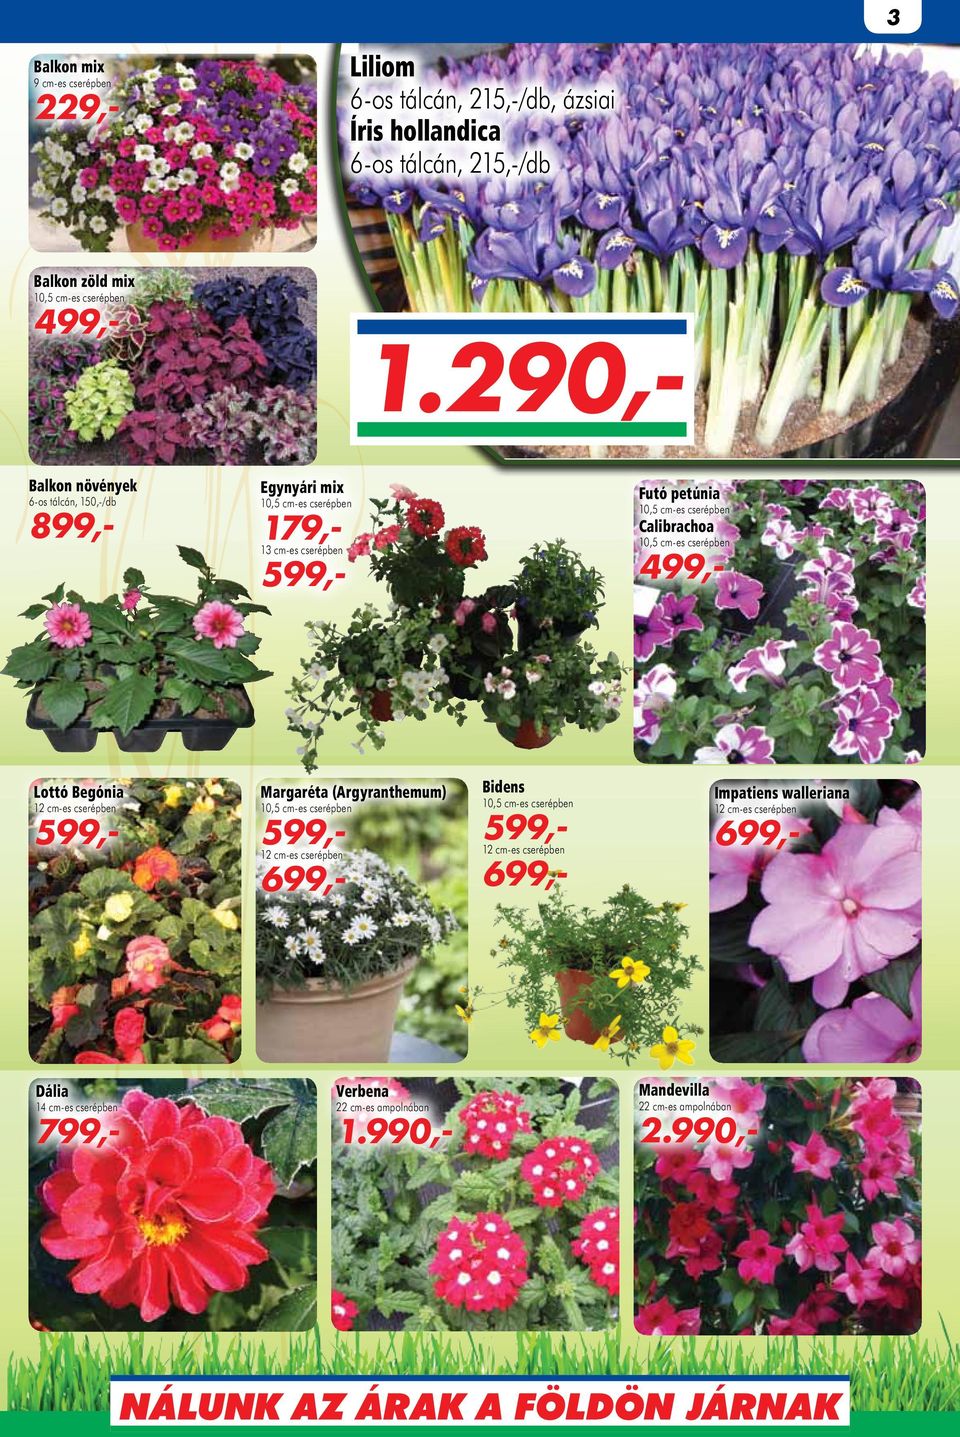 290,- Balkon növények 6-os tálcán, 150,-/db 899,- Egynyári mix 179,- 13 cm-es cserépben Futó petúnia